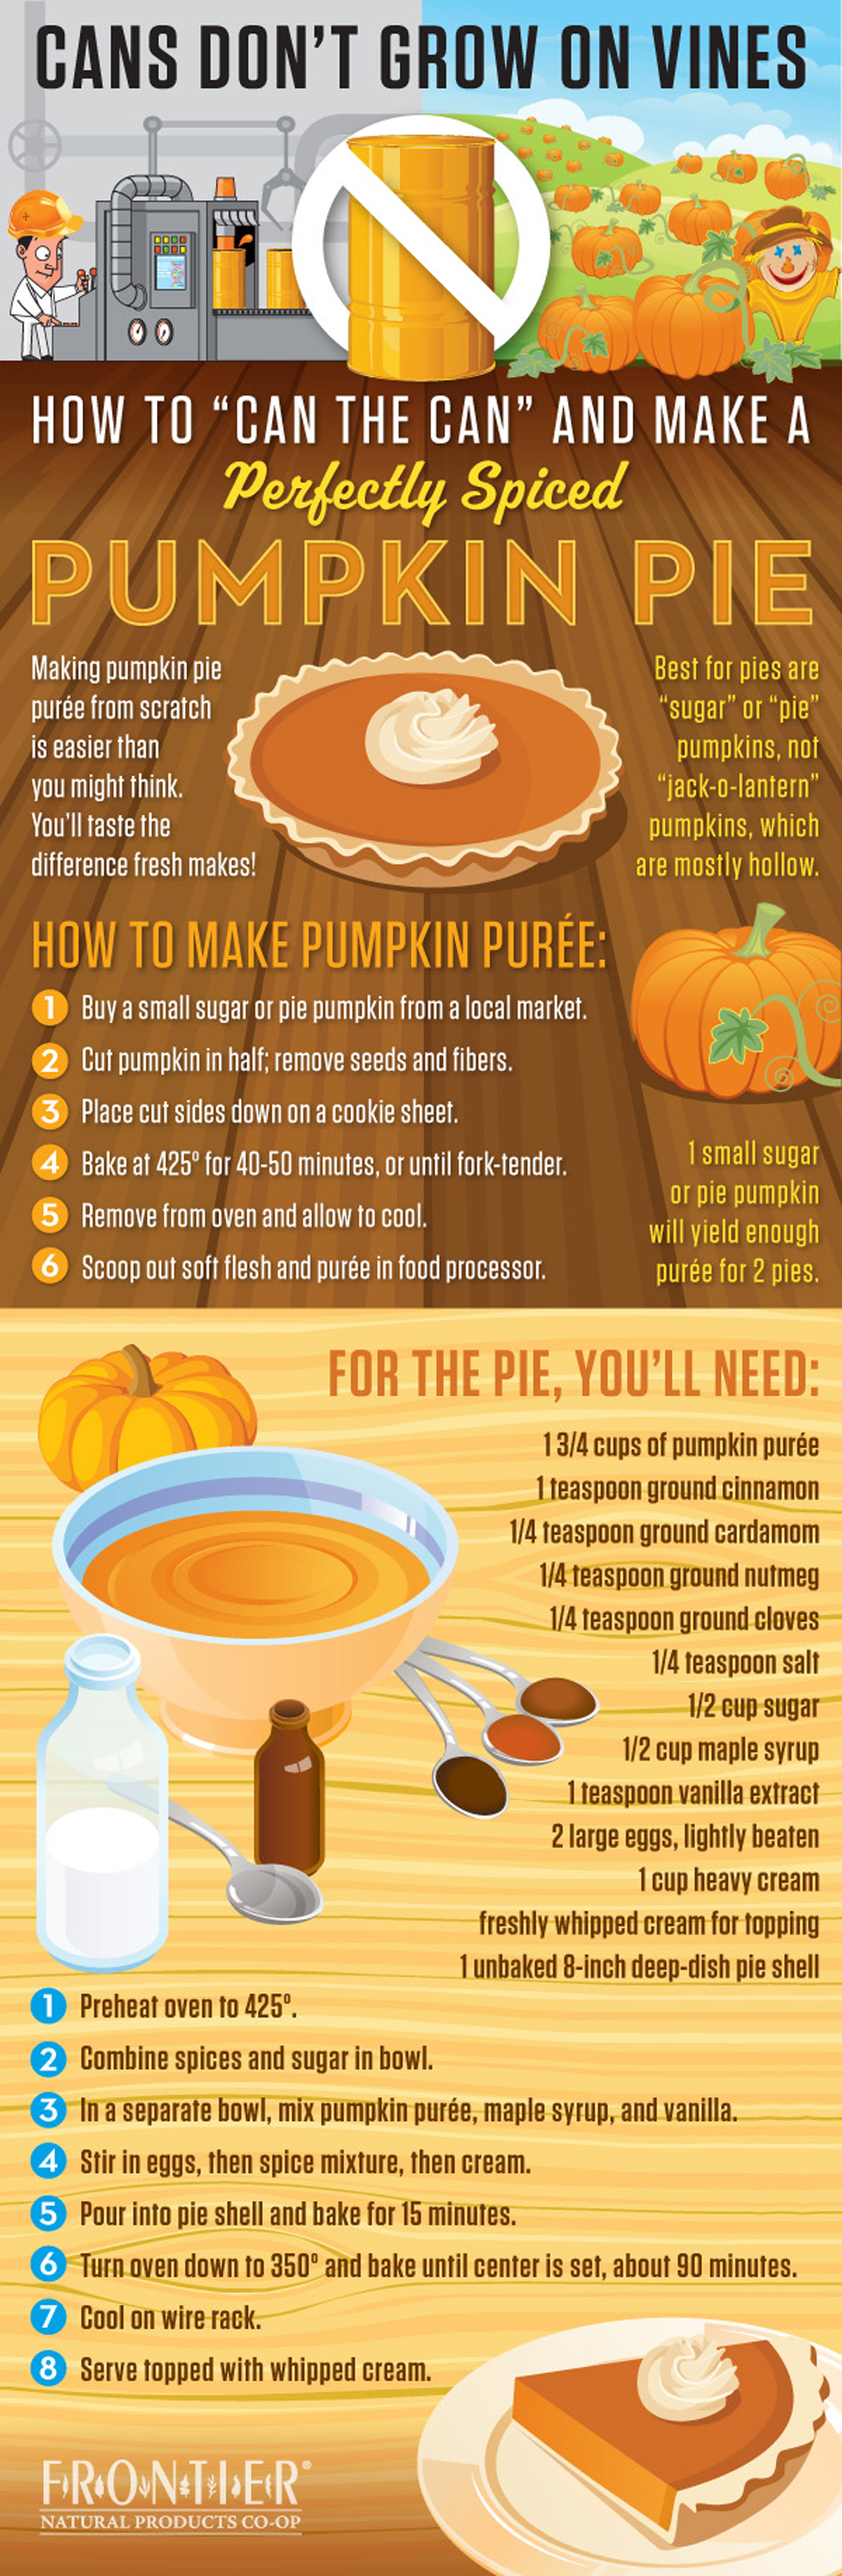 How To Make Pumpkin Pie